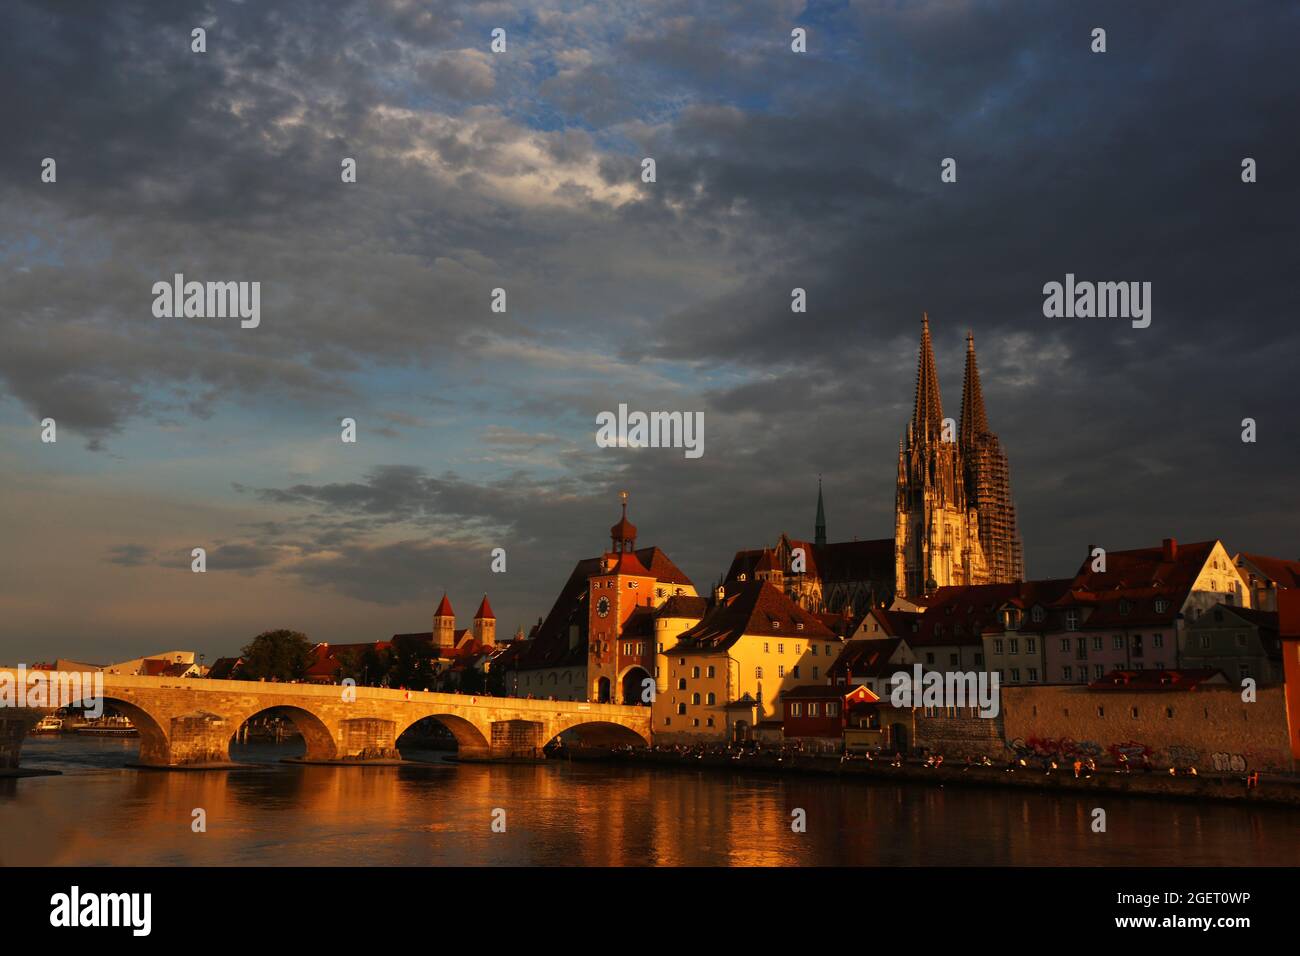 Mittelalterliche Stadt Regensburg mit Altstadt und Steinerne Brücke über die Donau in der Oberpfalz in Bayern in Deutschland Stock Photo